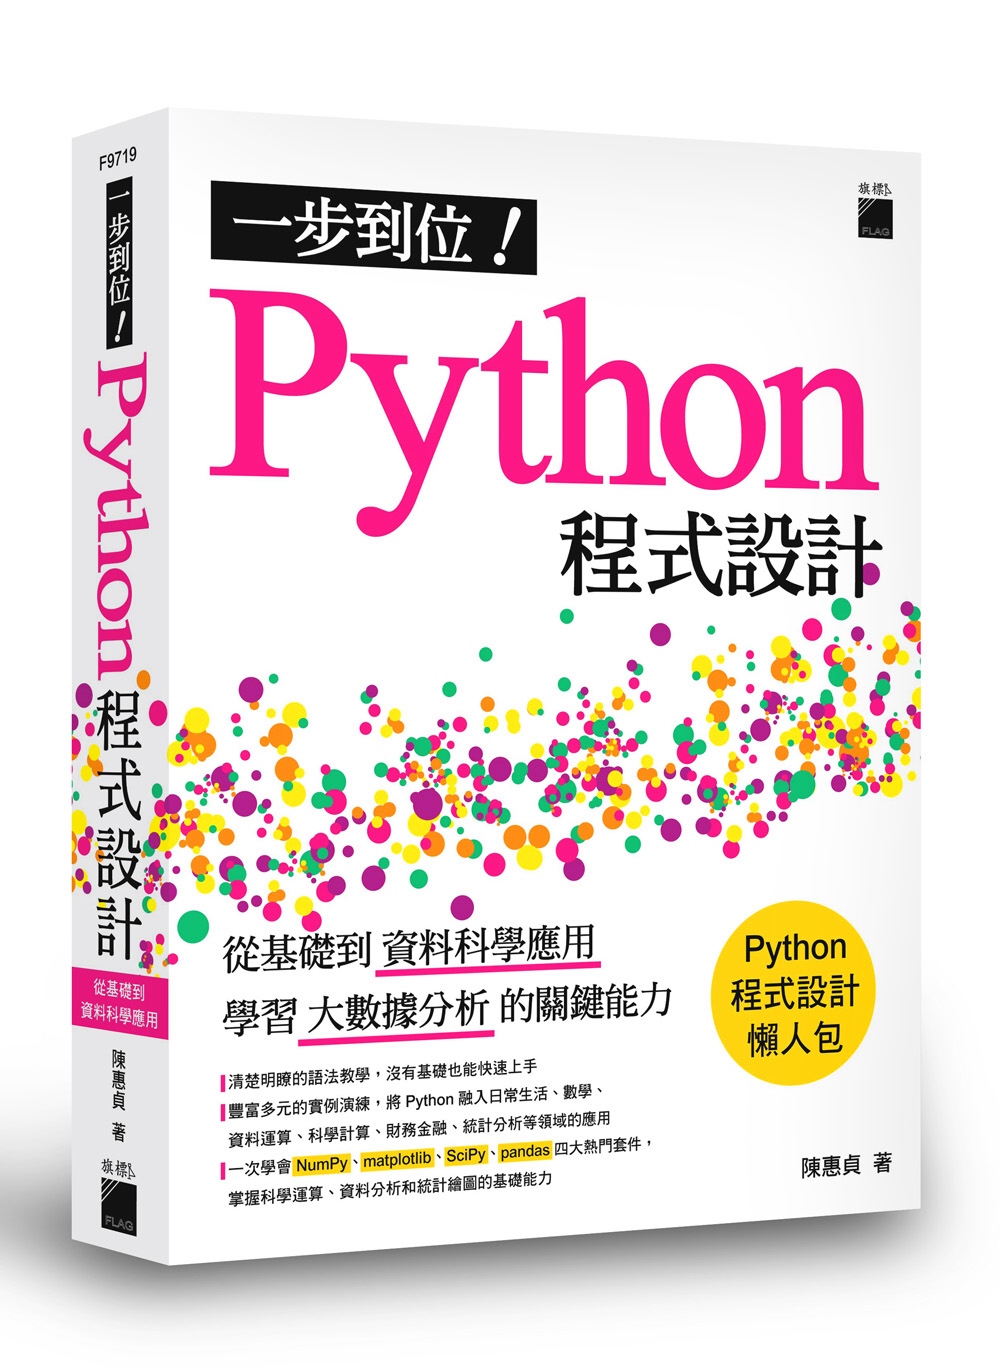 一步到位！Python 程式設計：從基礎到資料科學應用，學習大數據分析的關鍵能力